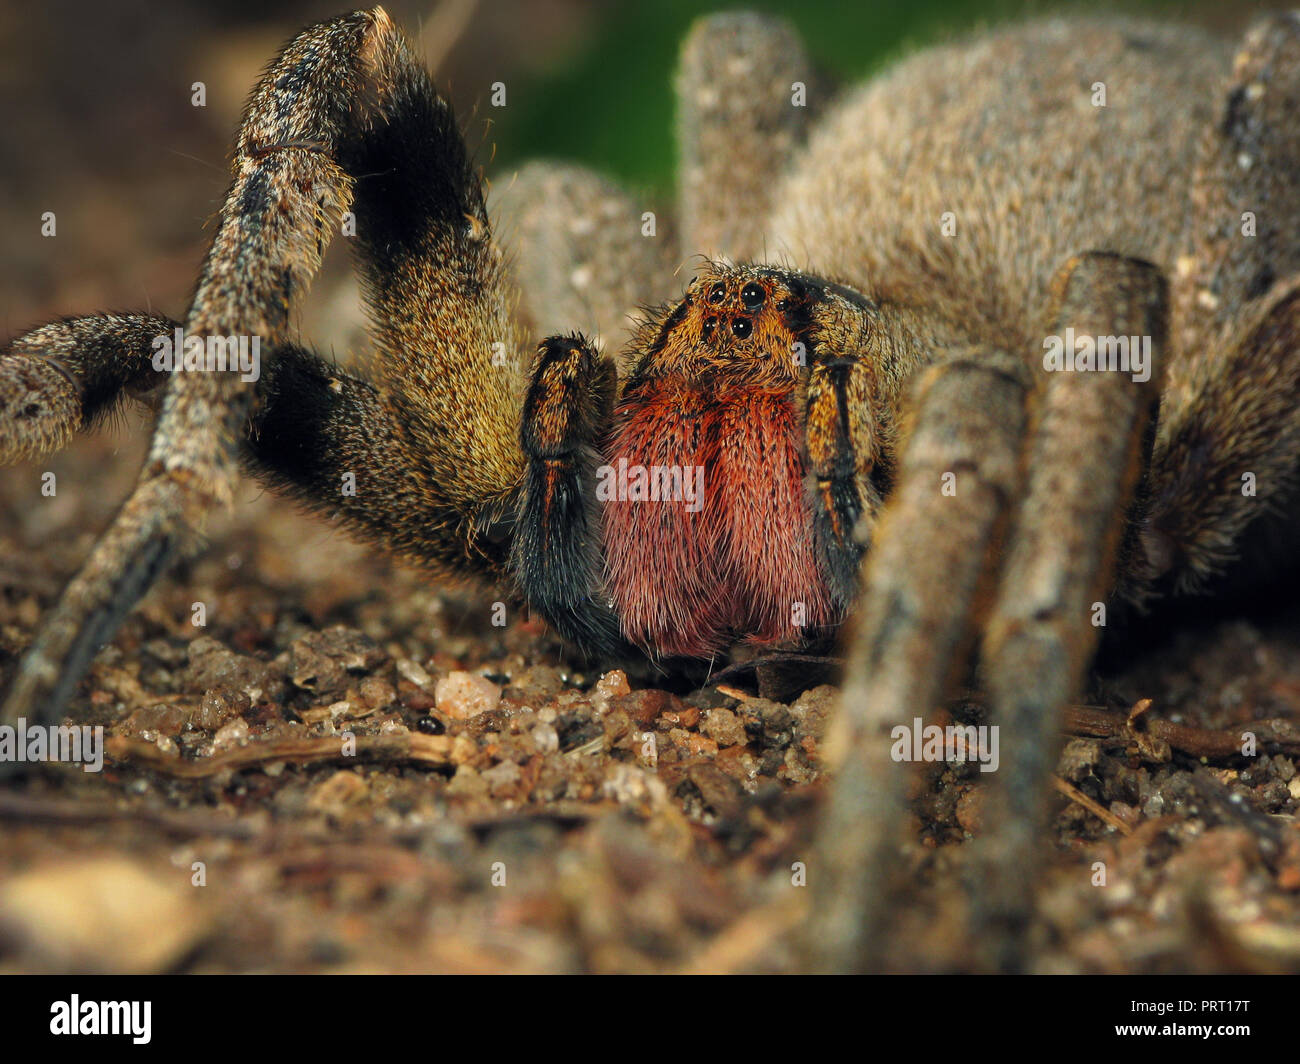 L'errance du Brésil (araignée Phoneutria) macro frontale sur le terrain, au niveau des yeux de l'image montrant le crocs rouges (chélicères). Depuis le sud-est du Brésil. Banque D'Images